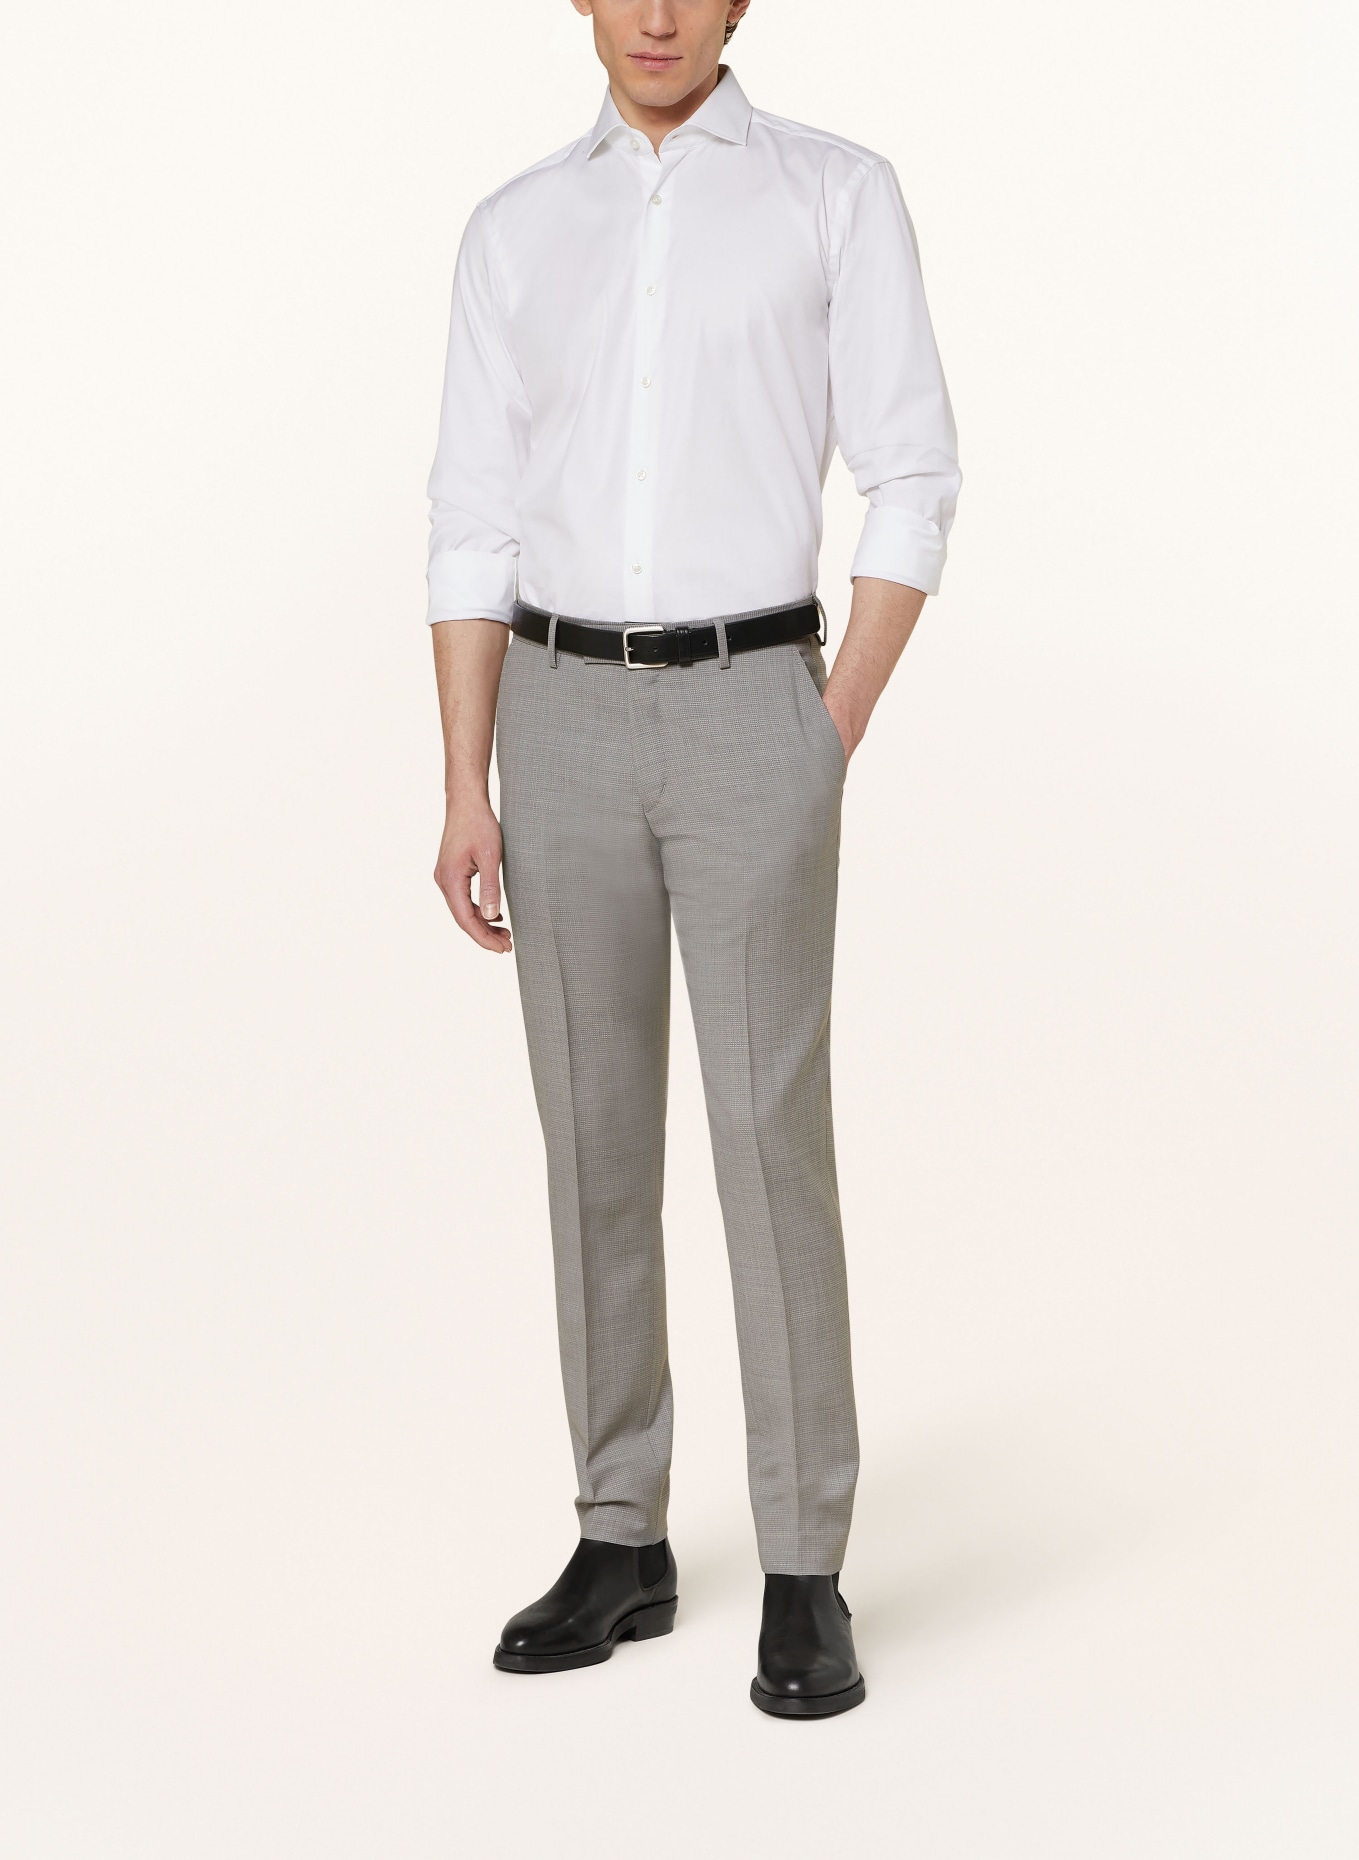 TIGER OF SWEDEN Suit trousers TENUTA slim fit, Color: M04 Light Grey Melange (Image 3)